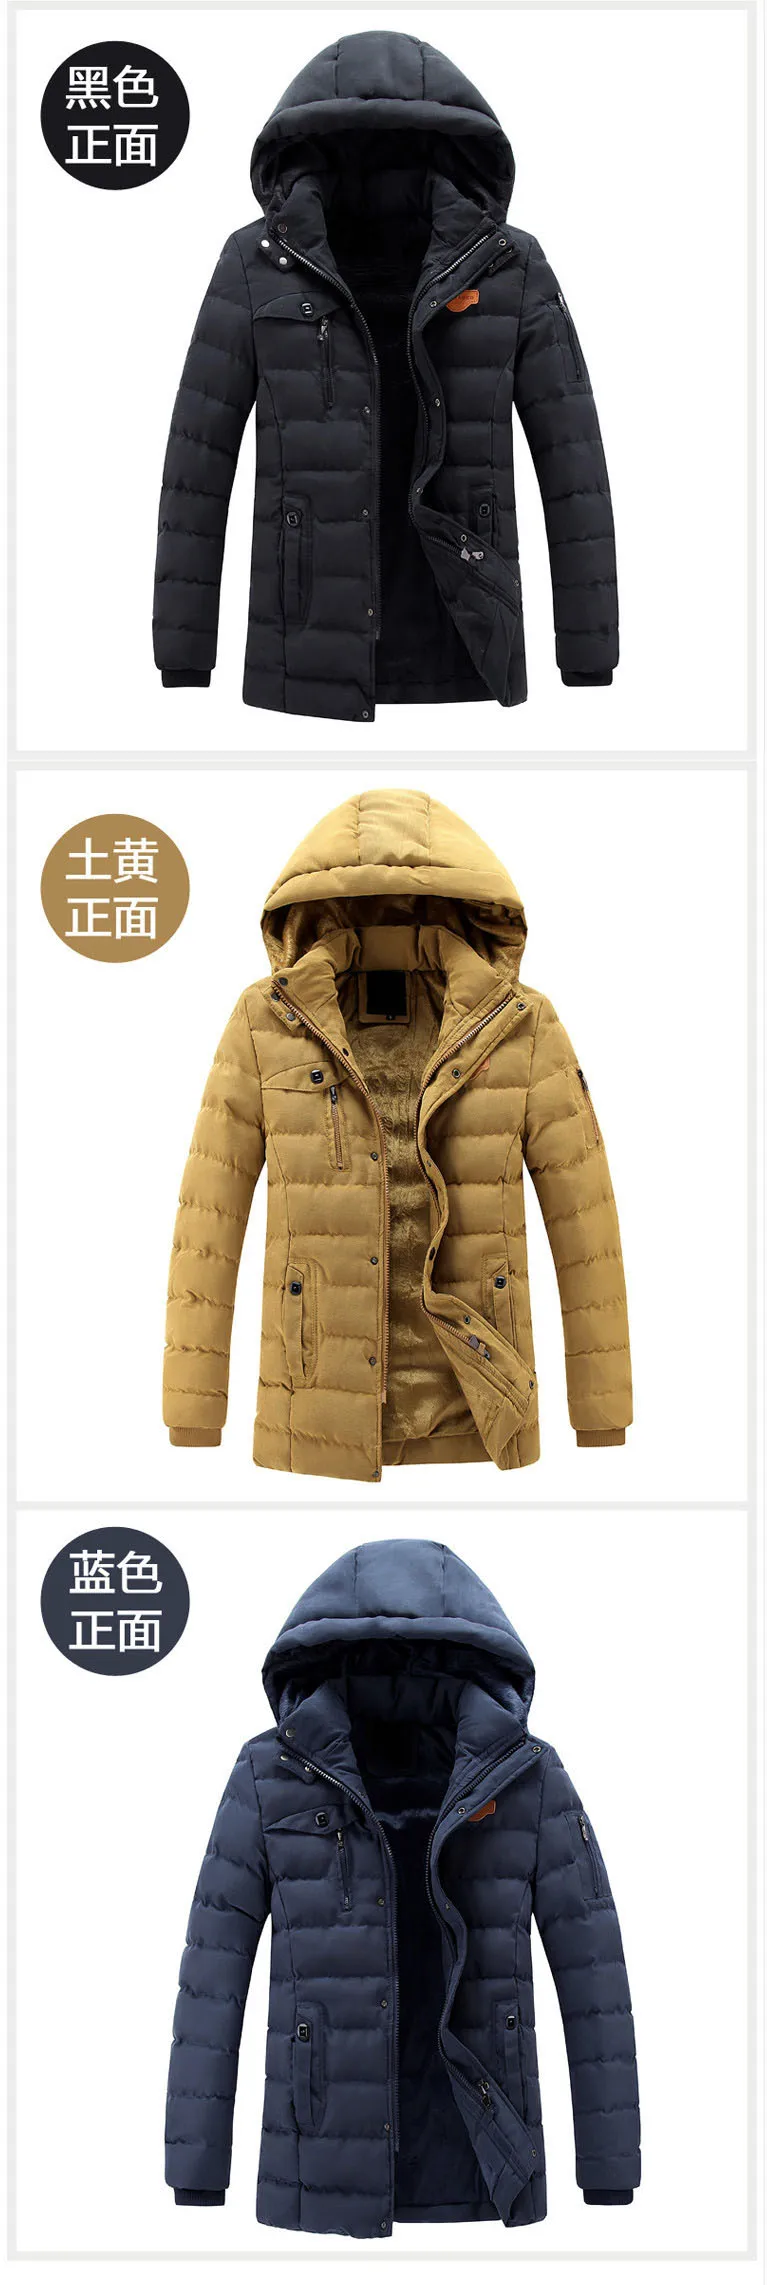 ZOEQO Новая мода канада зимняя куртка Мужская Утепленная повседневная куртка х/б верхняя одежда дышащая мода теплое пальто парка для мужчин